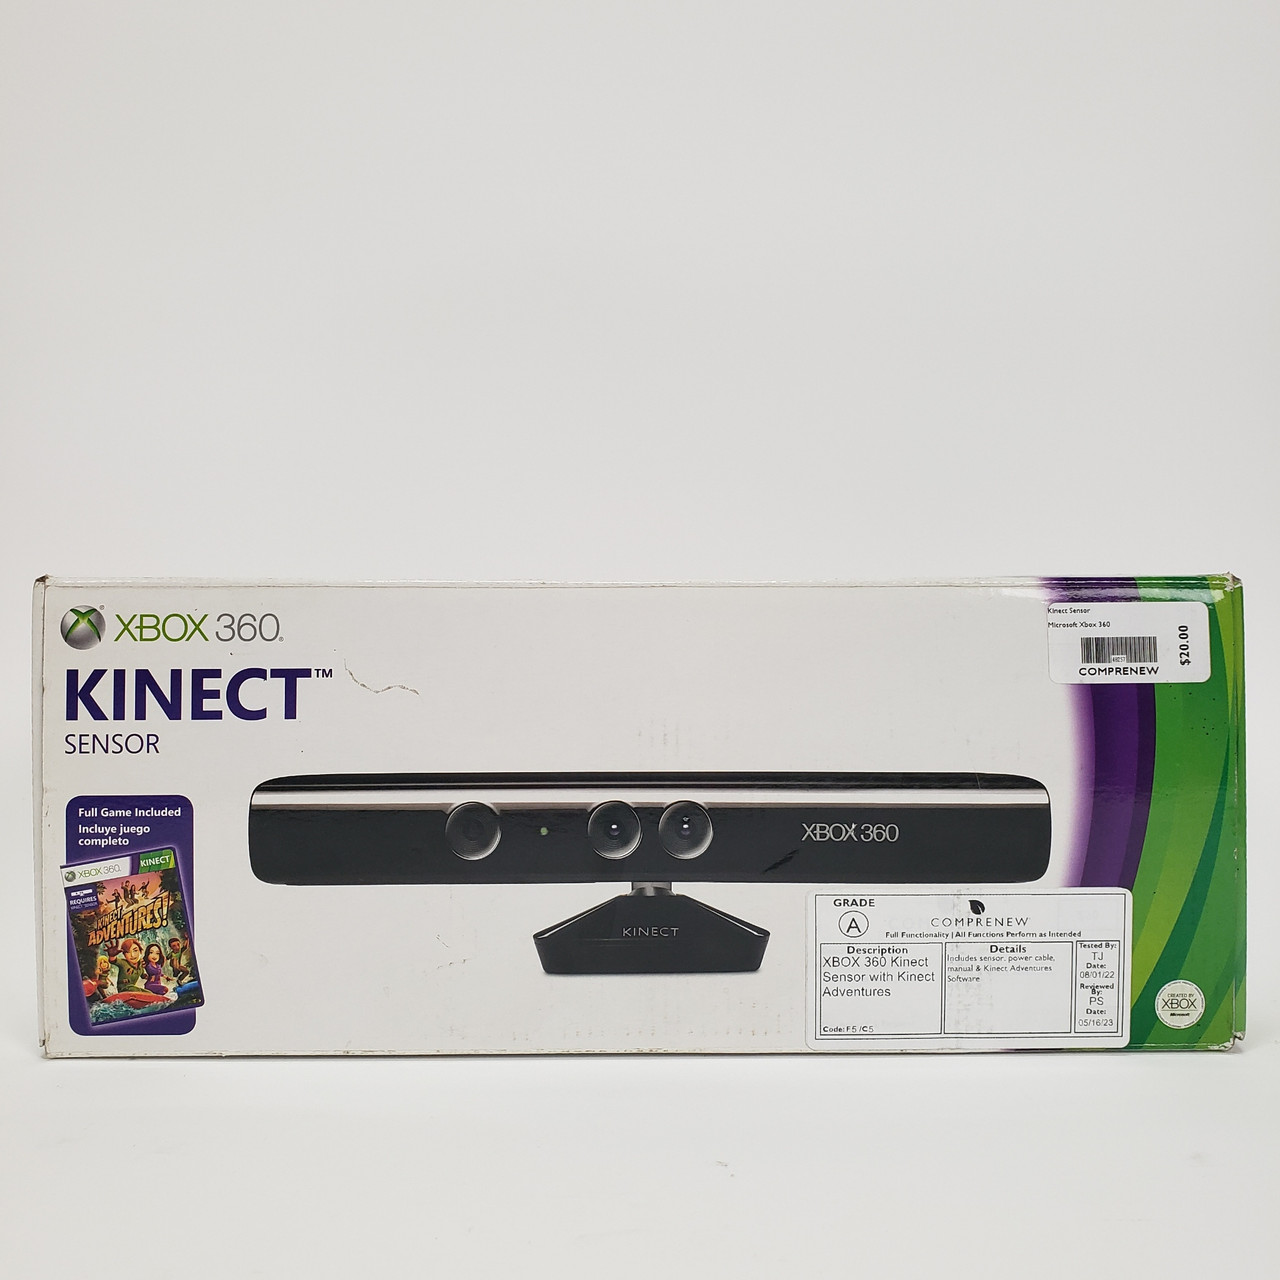 Kinect Sensor with Kinect Adventures!